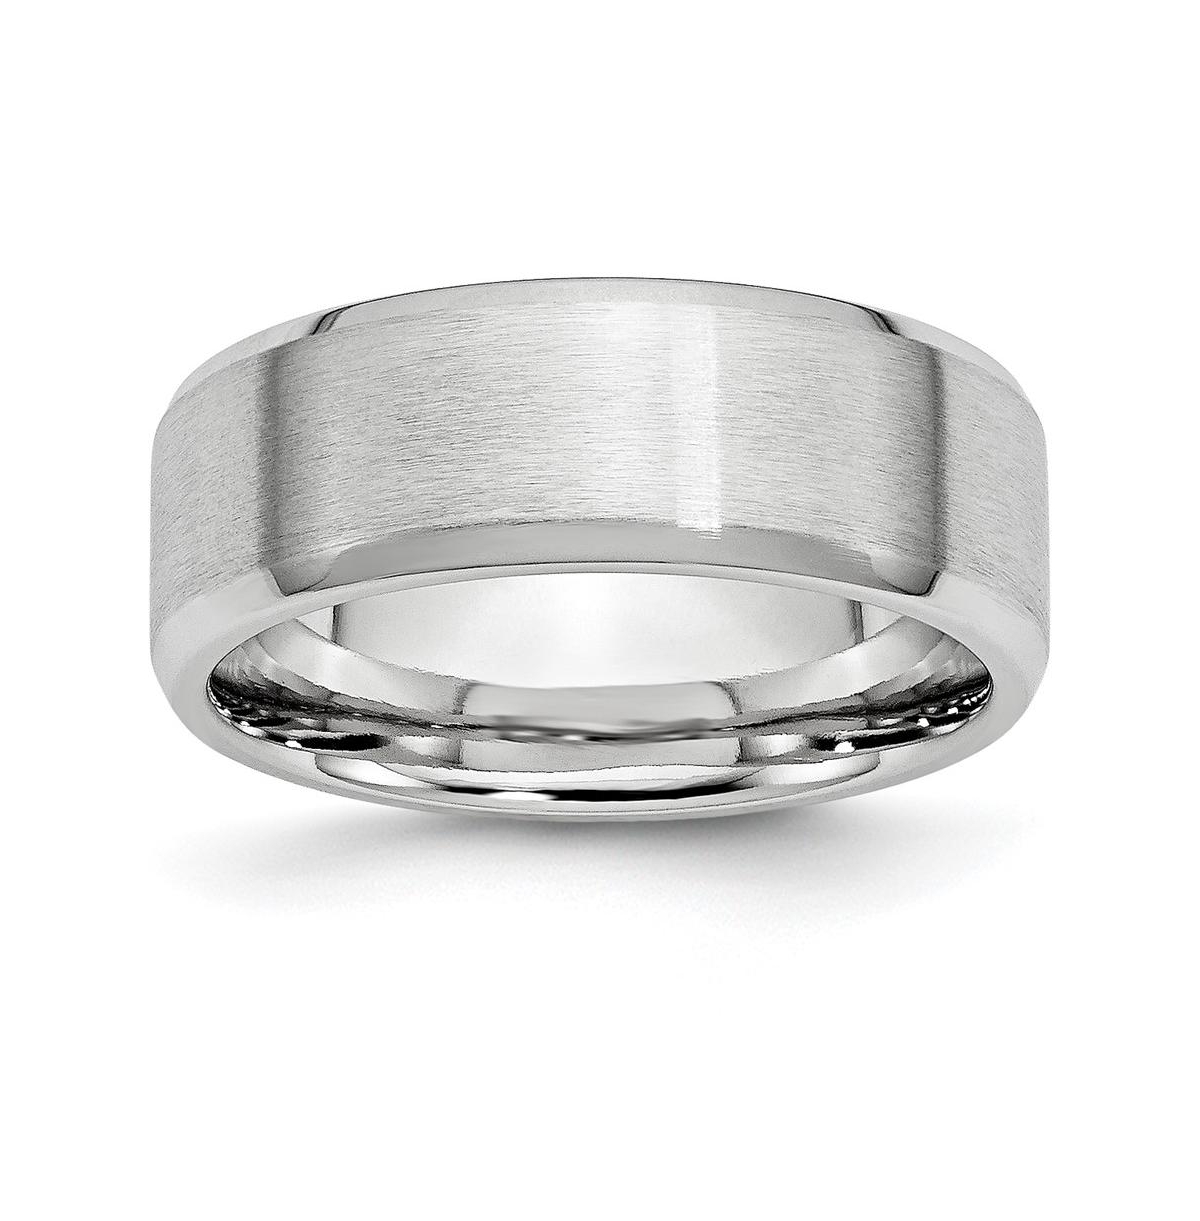 Cobalt Satin and Polished Beveled Edge Wedding Band Ring - White